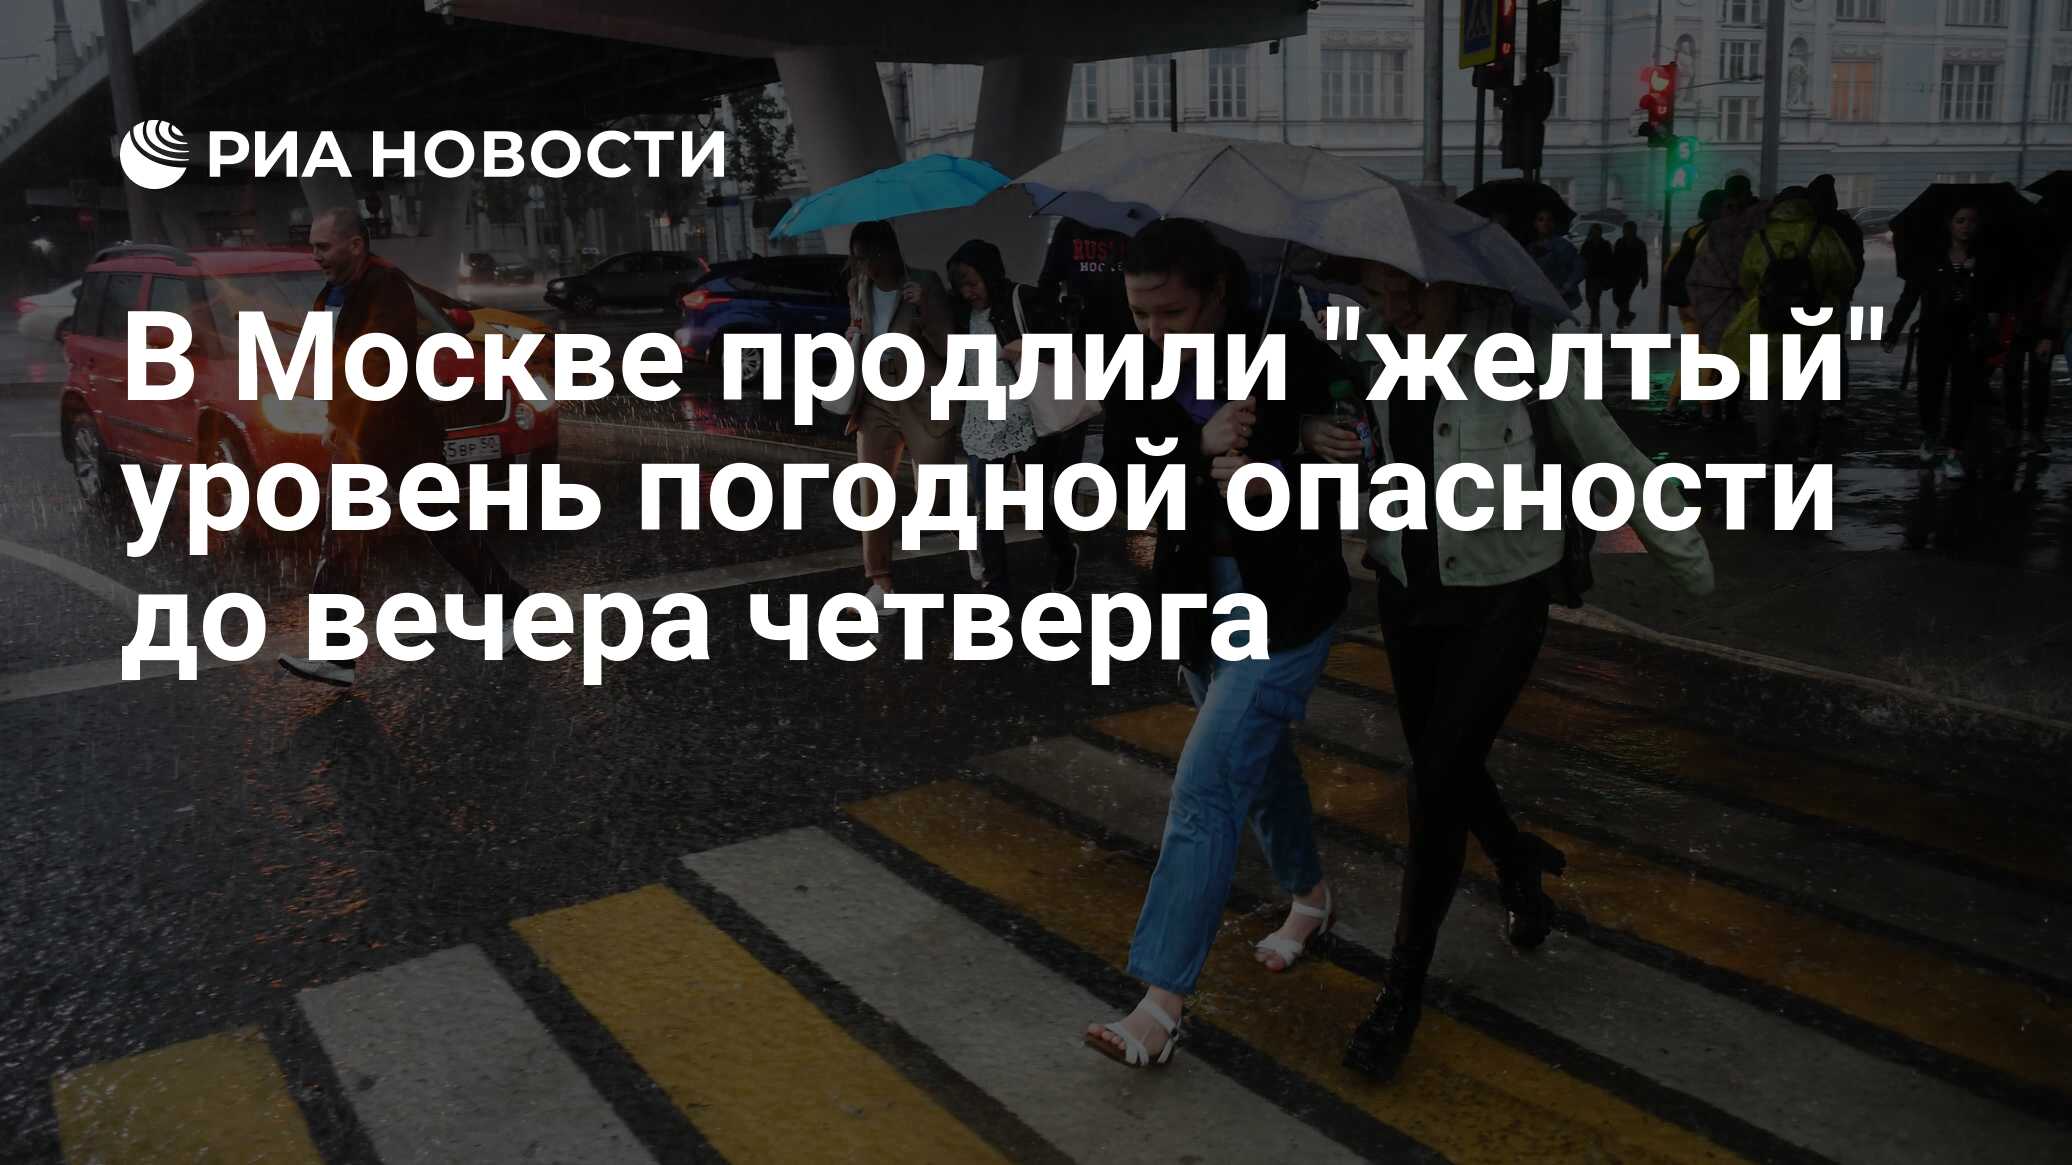 Желтый уровень опасности липецк. В Москве объявили желтый уровень опасности. Желтый уровень погодной опасности. В Петербурге объявили желтый уровень погодной опасности. МЧС жёлтая уровень погодной опасности.